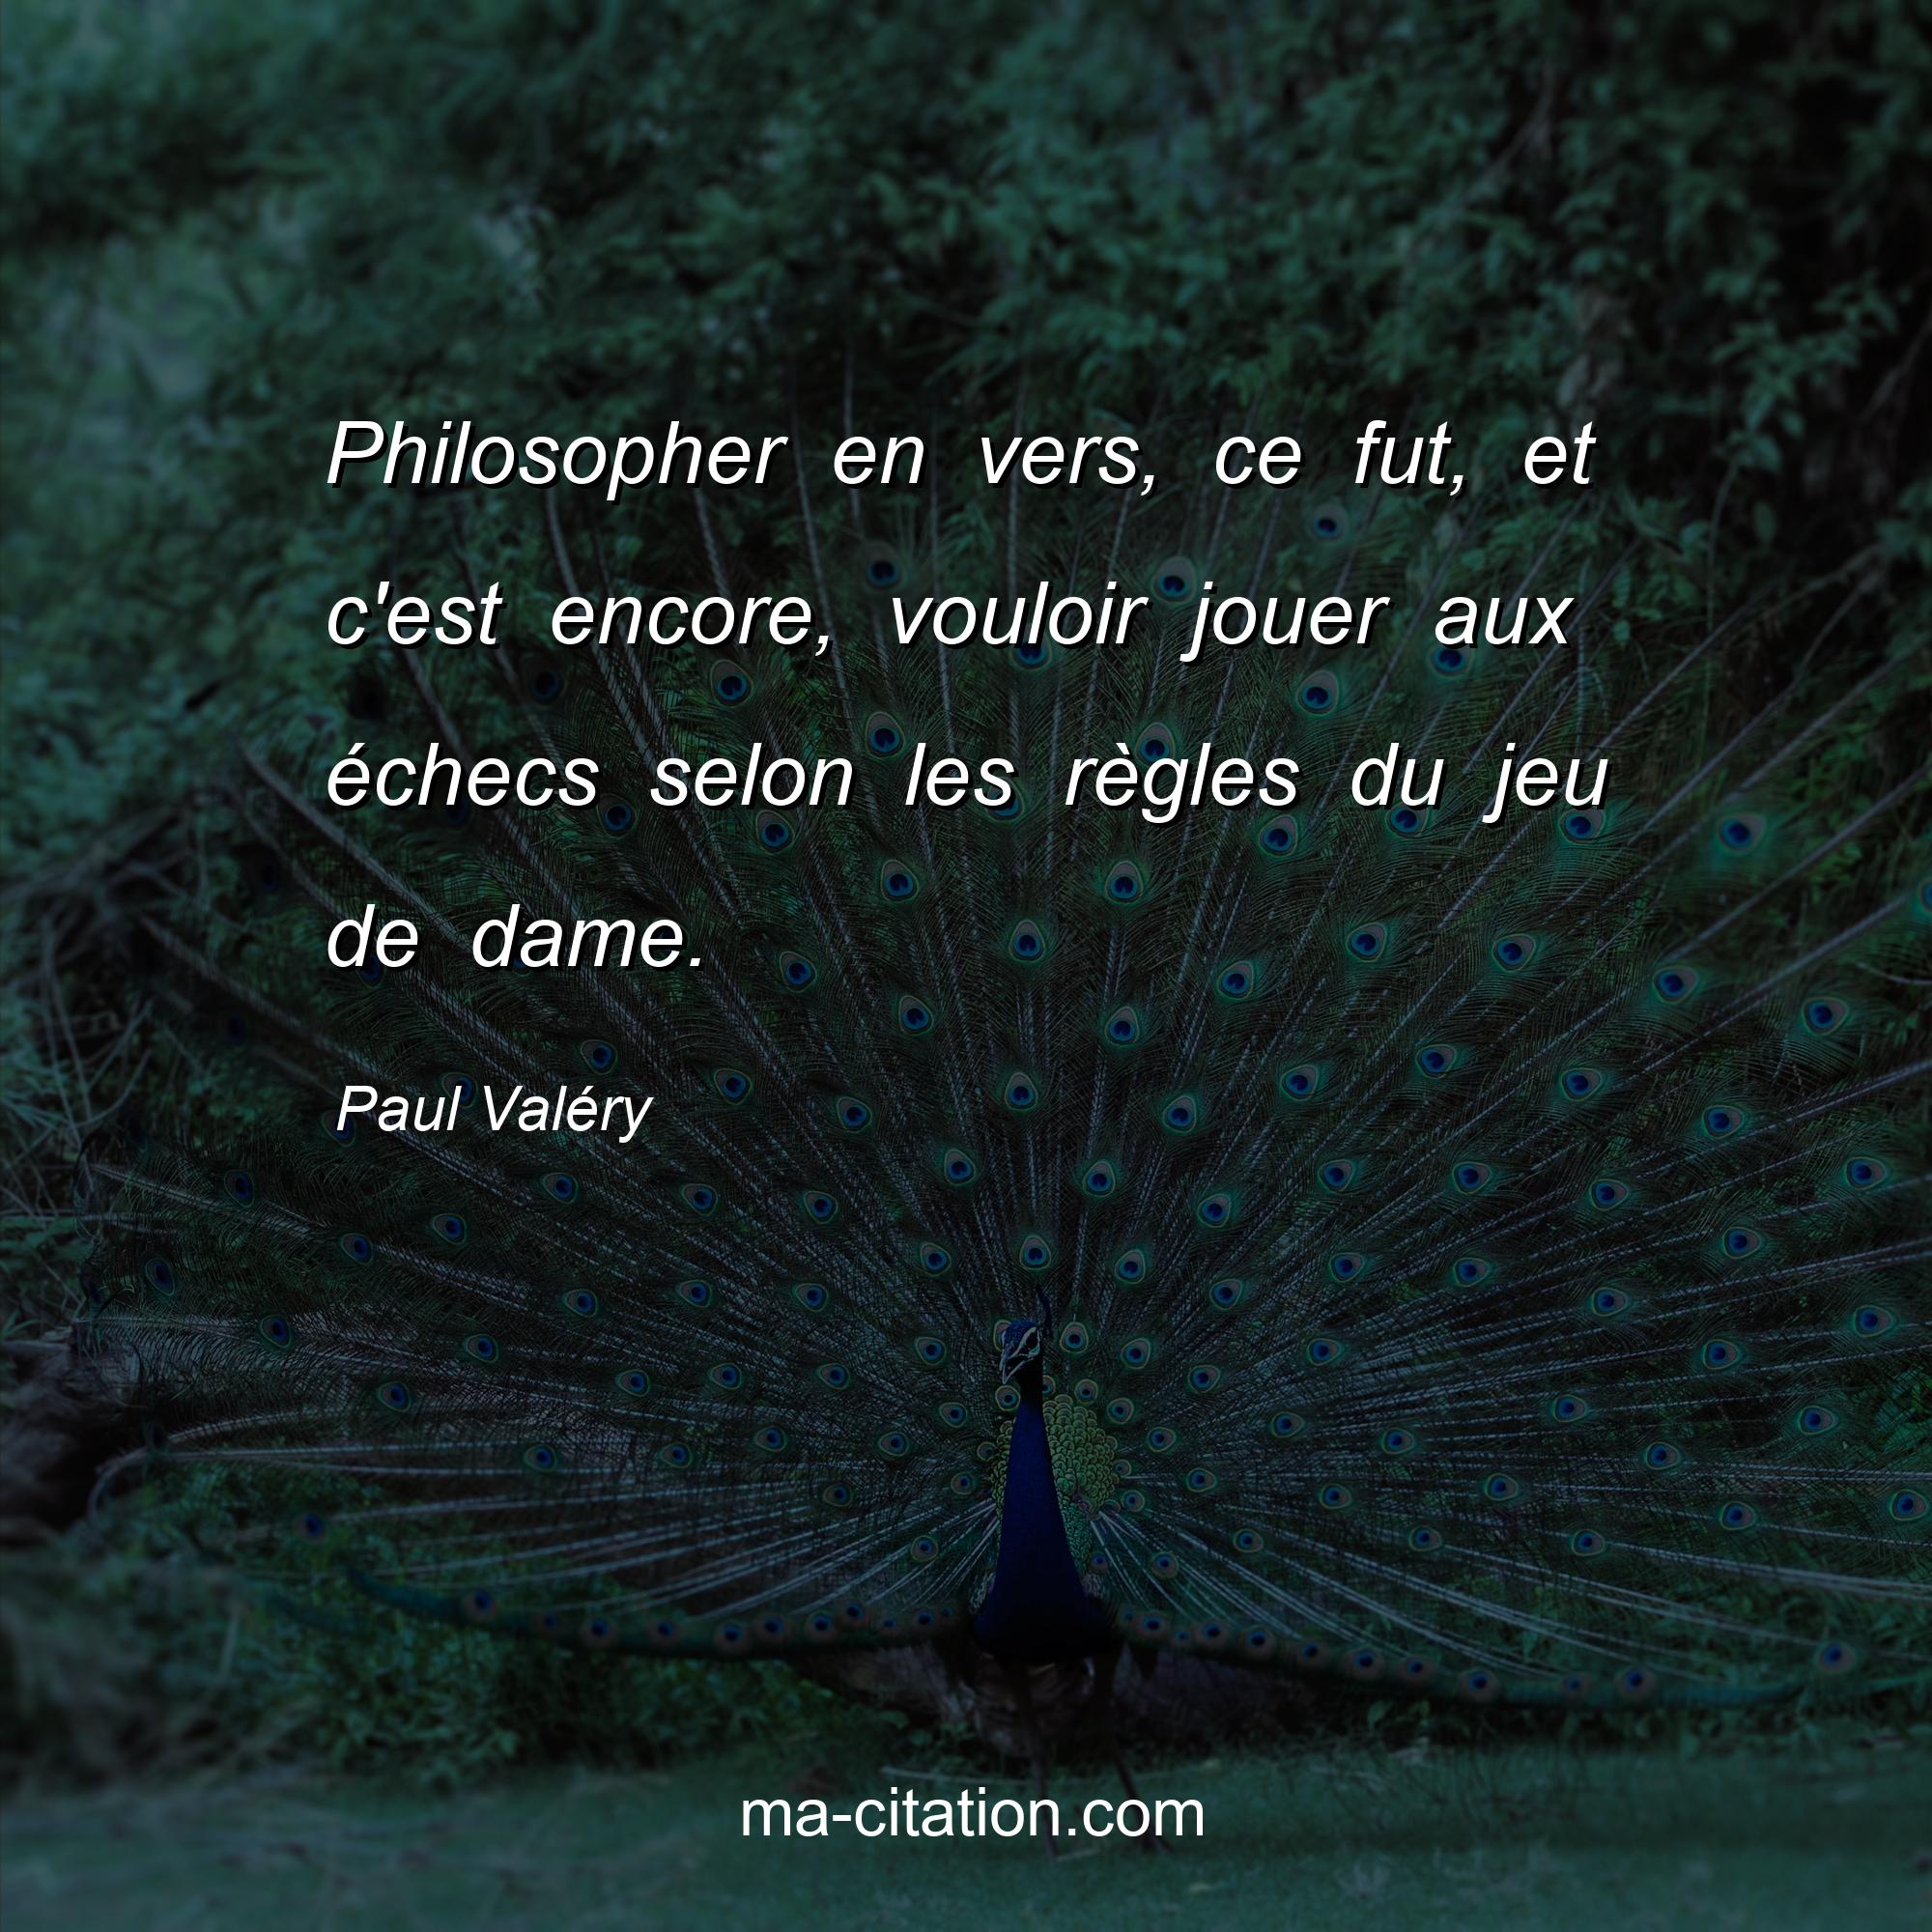 Paul Valéry : Philosopher en vers, ce fut, et c'est encore, vouloir jouer aux échecs selon les règles du jeu de dame.